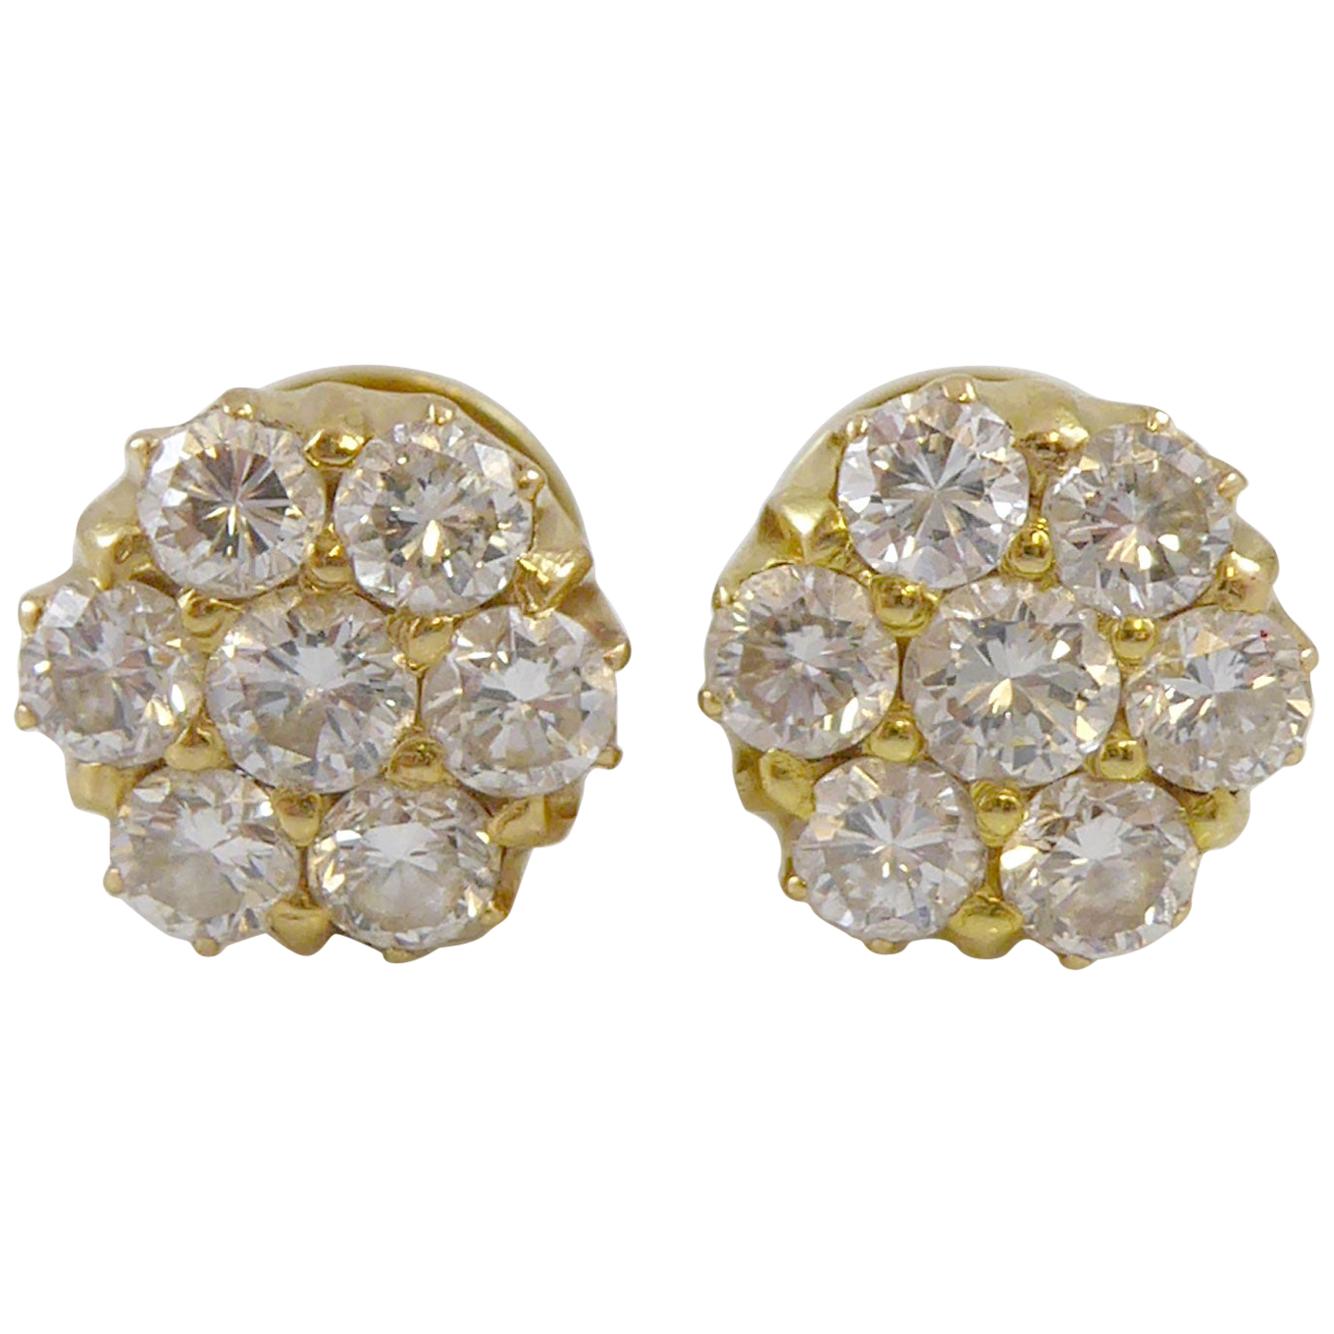 Vintage 1.62 Carat Diamond Stud Earrings, 18 Carat Gold